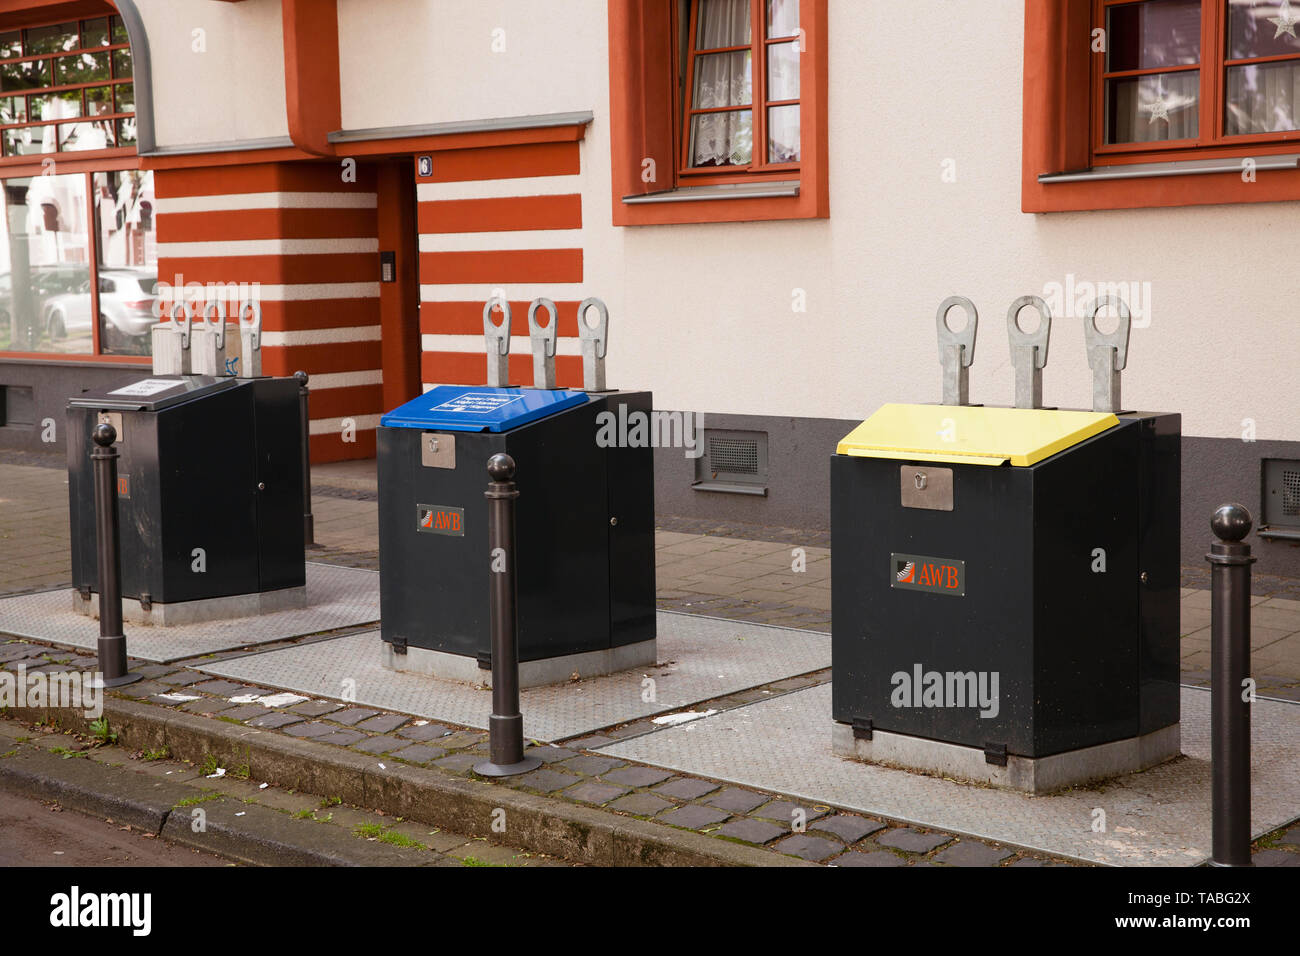 Jetez-les dans des contenants de déchets au sol au système Naumann Housing Estate dans le quartier Riehl, Cologne, Allemagne. Des Einwurfbehaelter Unterf Banque D'Images